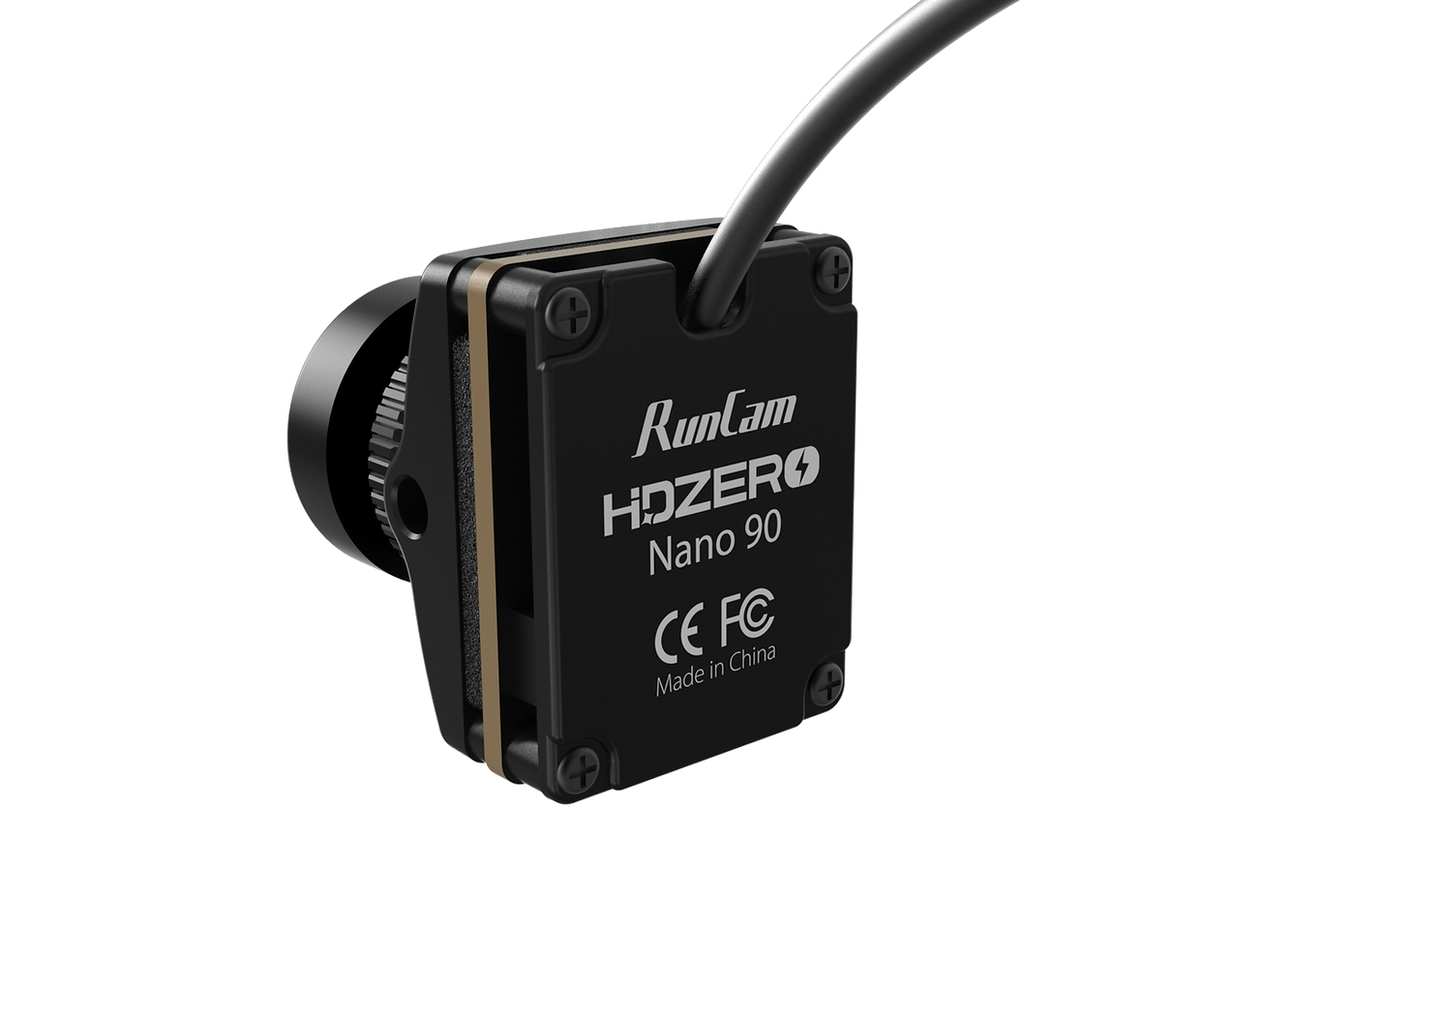 Runcam HDZero Nano 90